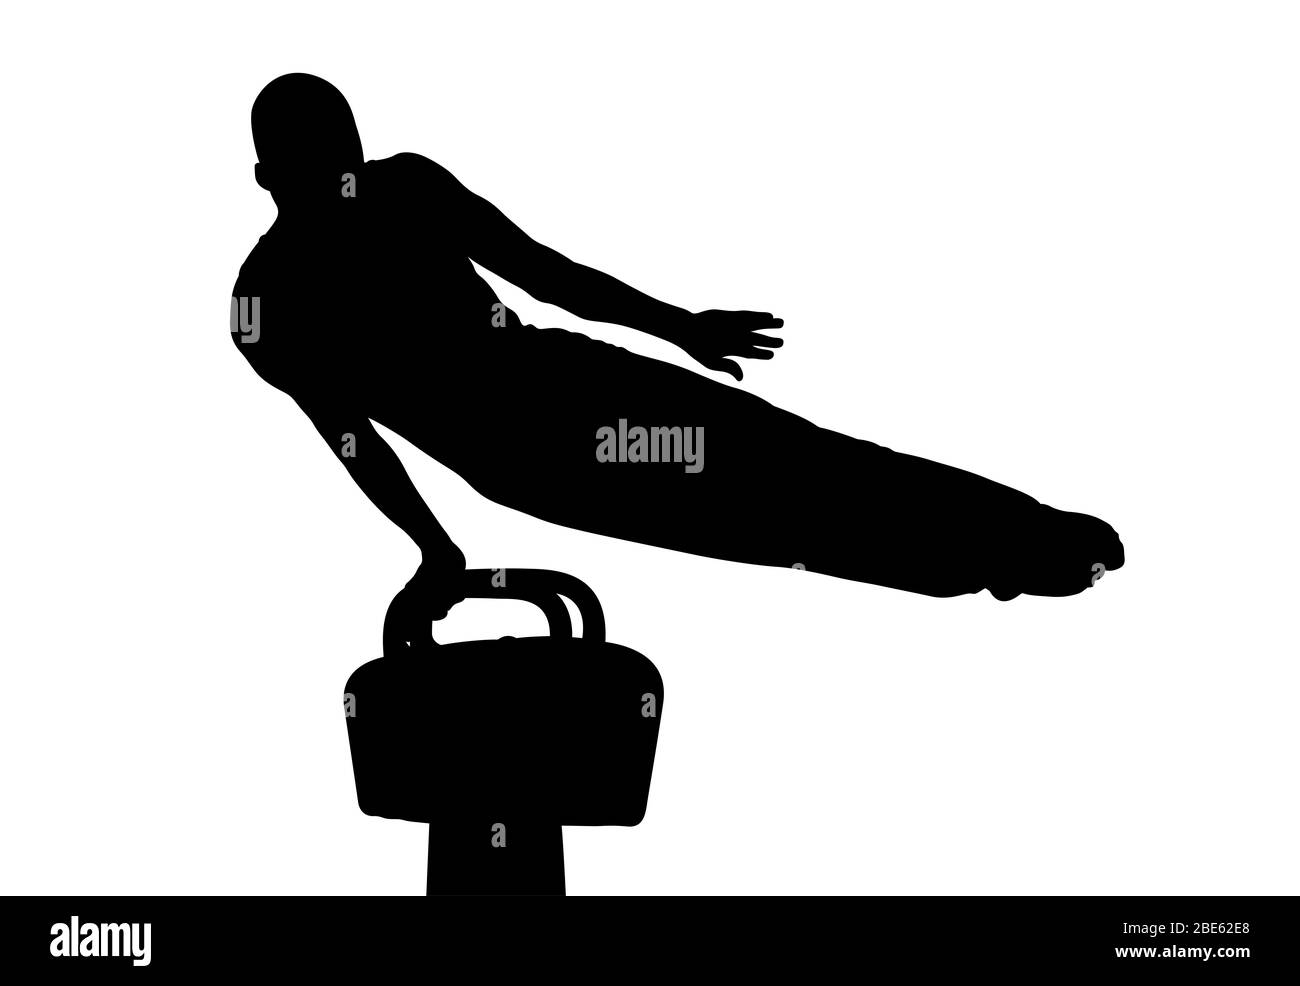 athlete gymnast exercise on pommel horse. isolated black silhouette Stock Photo